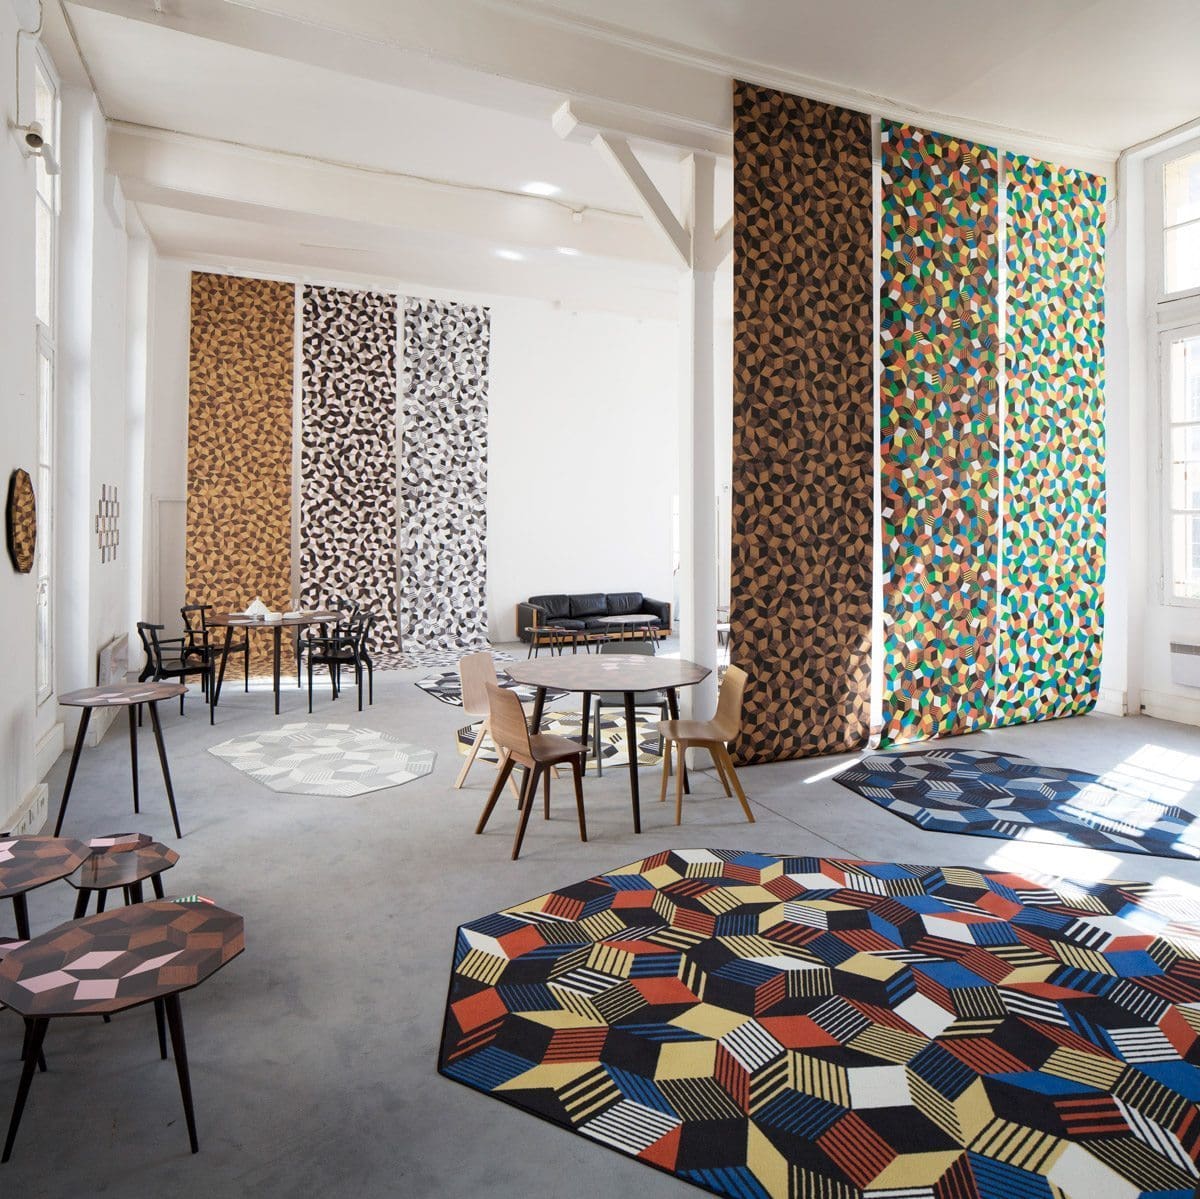 Exposition Penrose Project, Ich&Kar - Bazartherapy, Paris Design Week 2015, tables et tapis aux motifs géométriques, installation vertigineuse de papiers peints